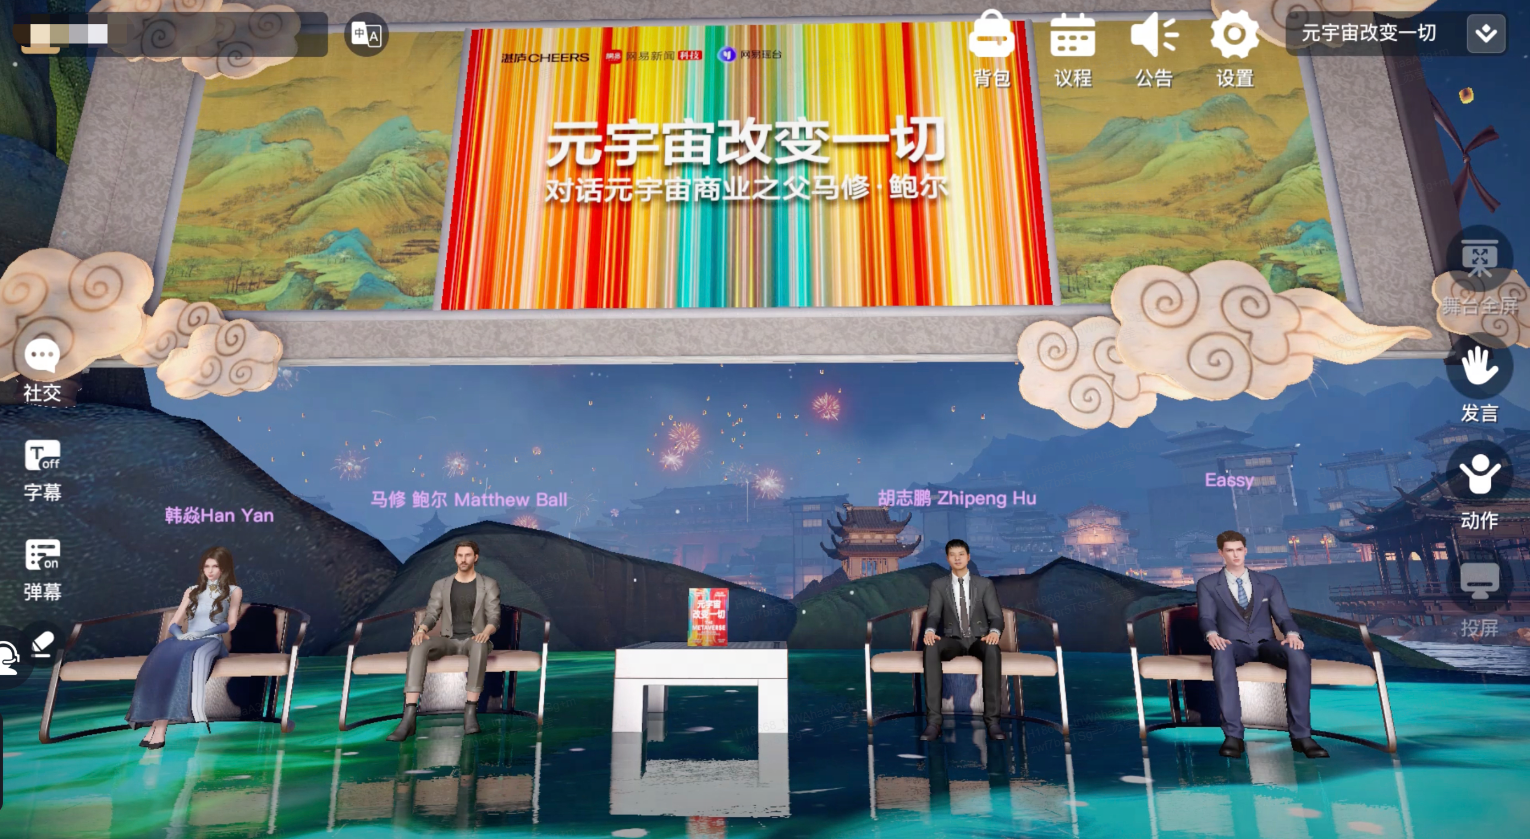 图片展示了四位嘉宾坐在虚拟演播室内，背景是中国古典风格画面，屏幕上方有中文标语。